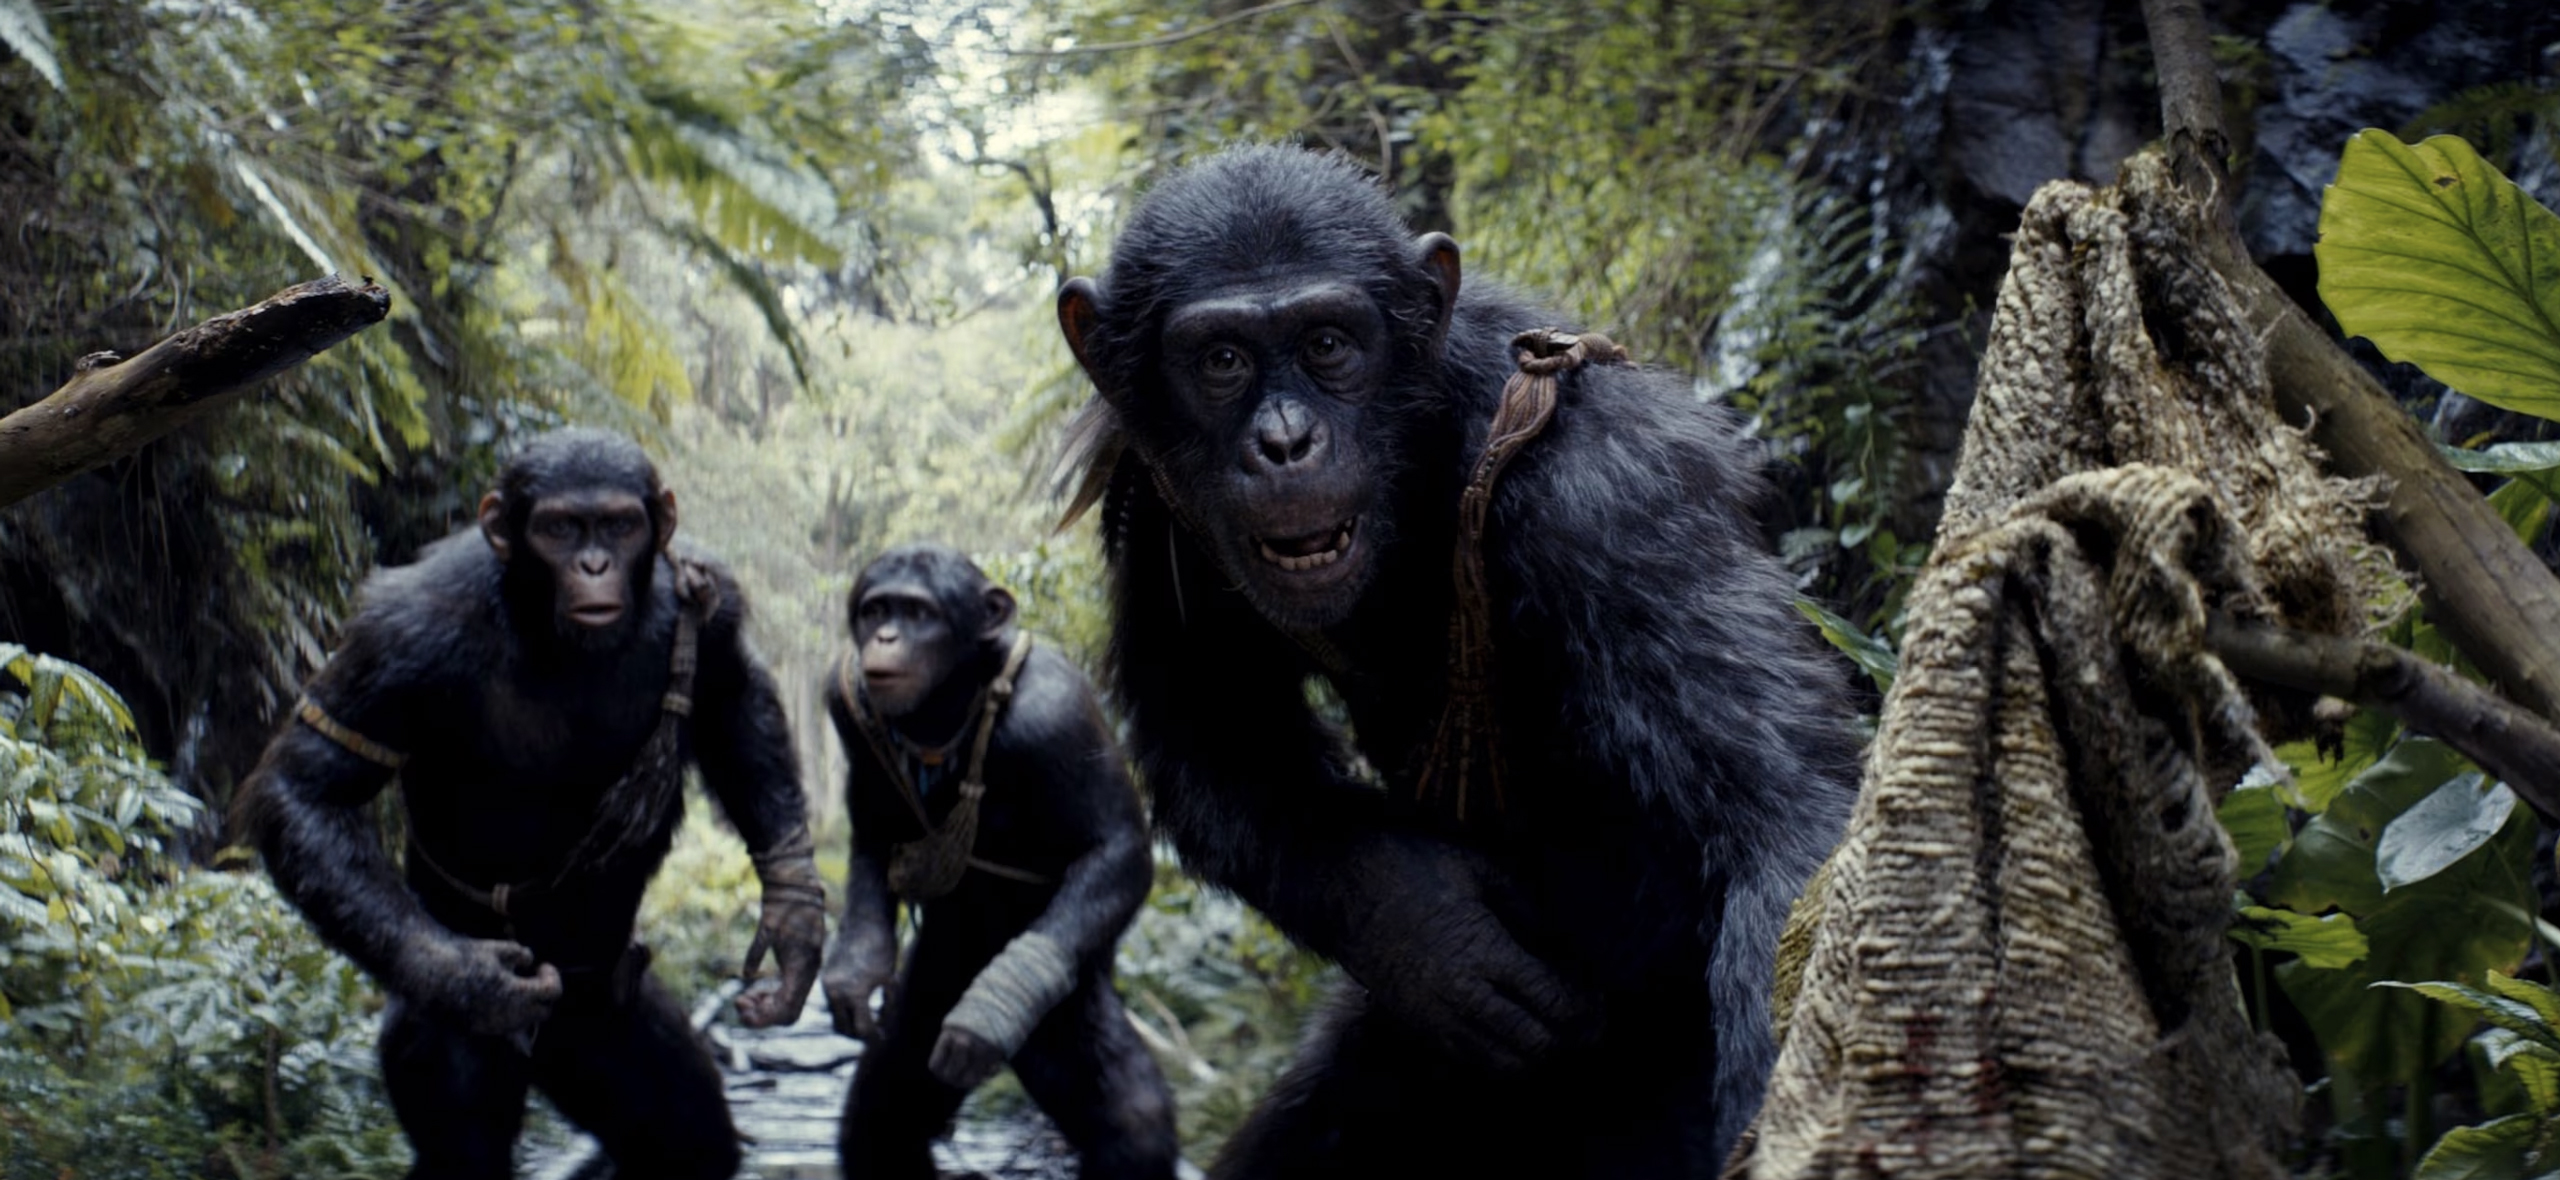 «Планета обезьян: Новое царство»: стоит ли смотреть драму о разумных приматах и одичавших людях